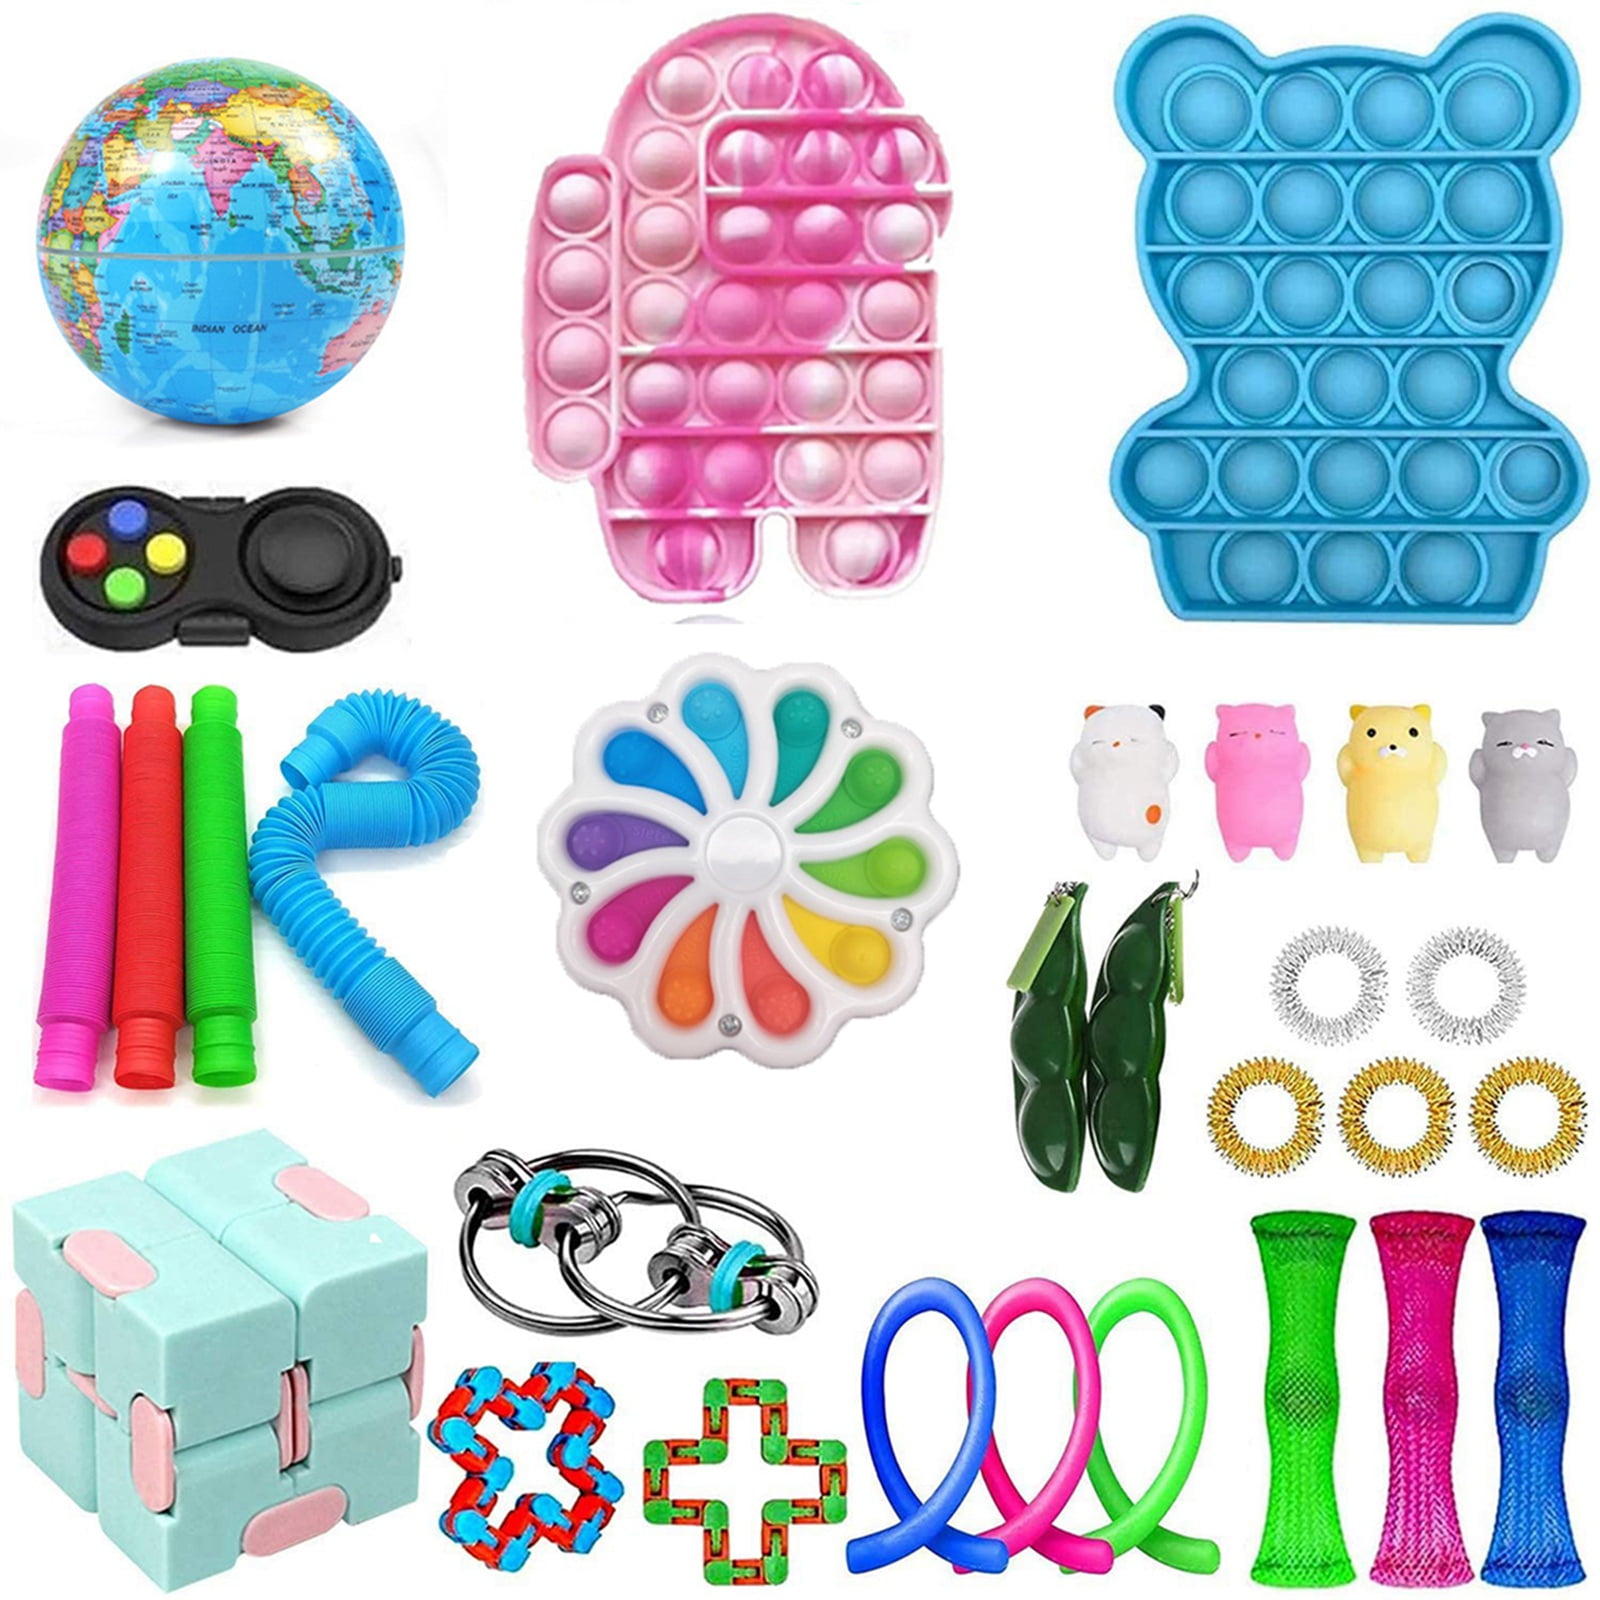 Details about   5-25PCS Fidget Toys Set Toy Bundle Stress Relief Hand Kids Adults Sensory Tools 